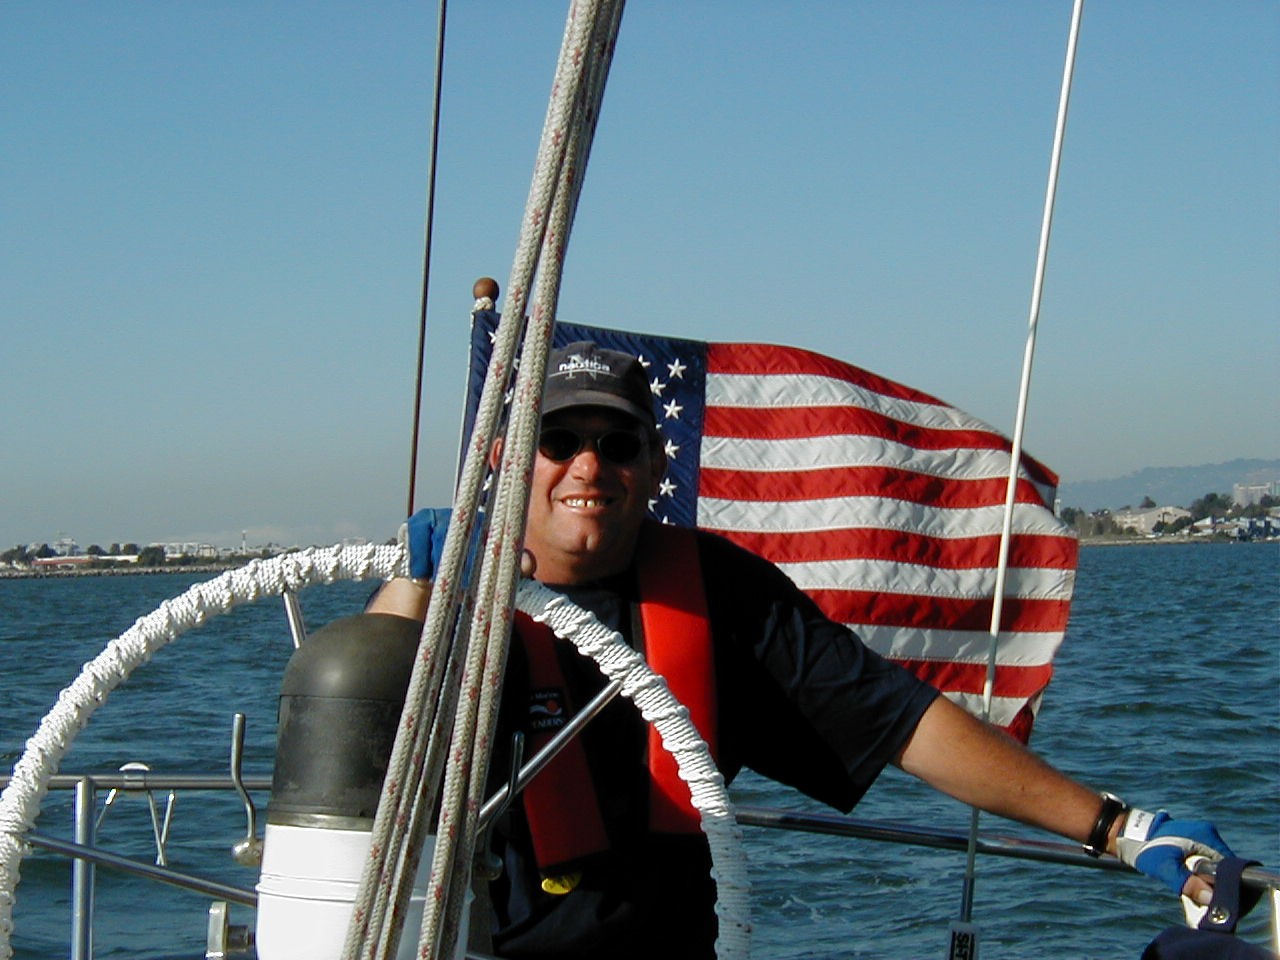 James sailing his boat Lionfish 2005